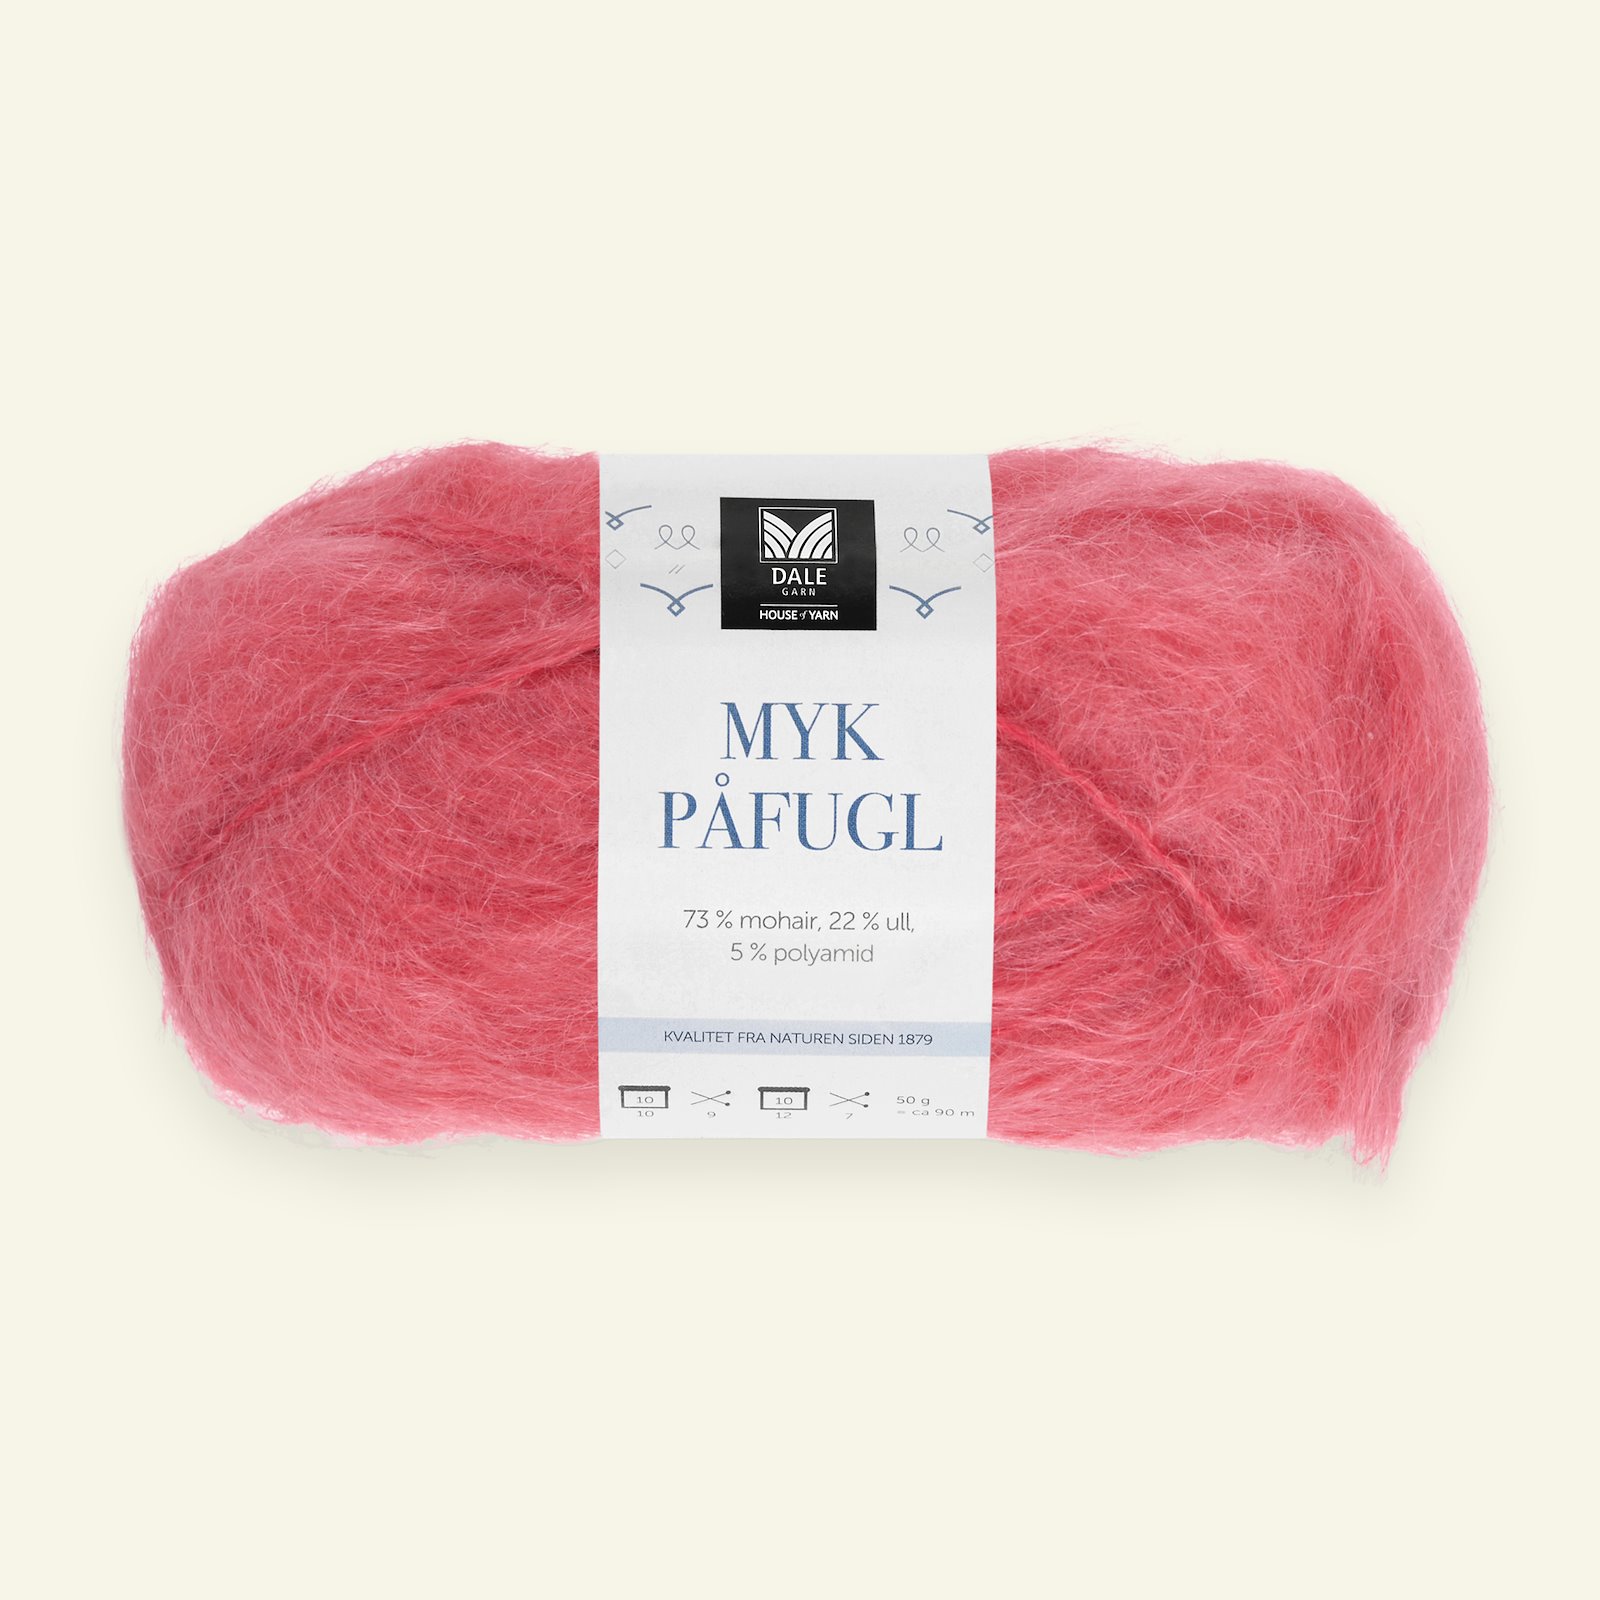 revolution flyde over excitation Dale Garn, mohair/wool yarn "Myk Påfugl", coral | Selfmade® /Stoff&Stil